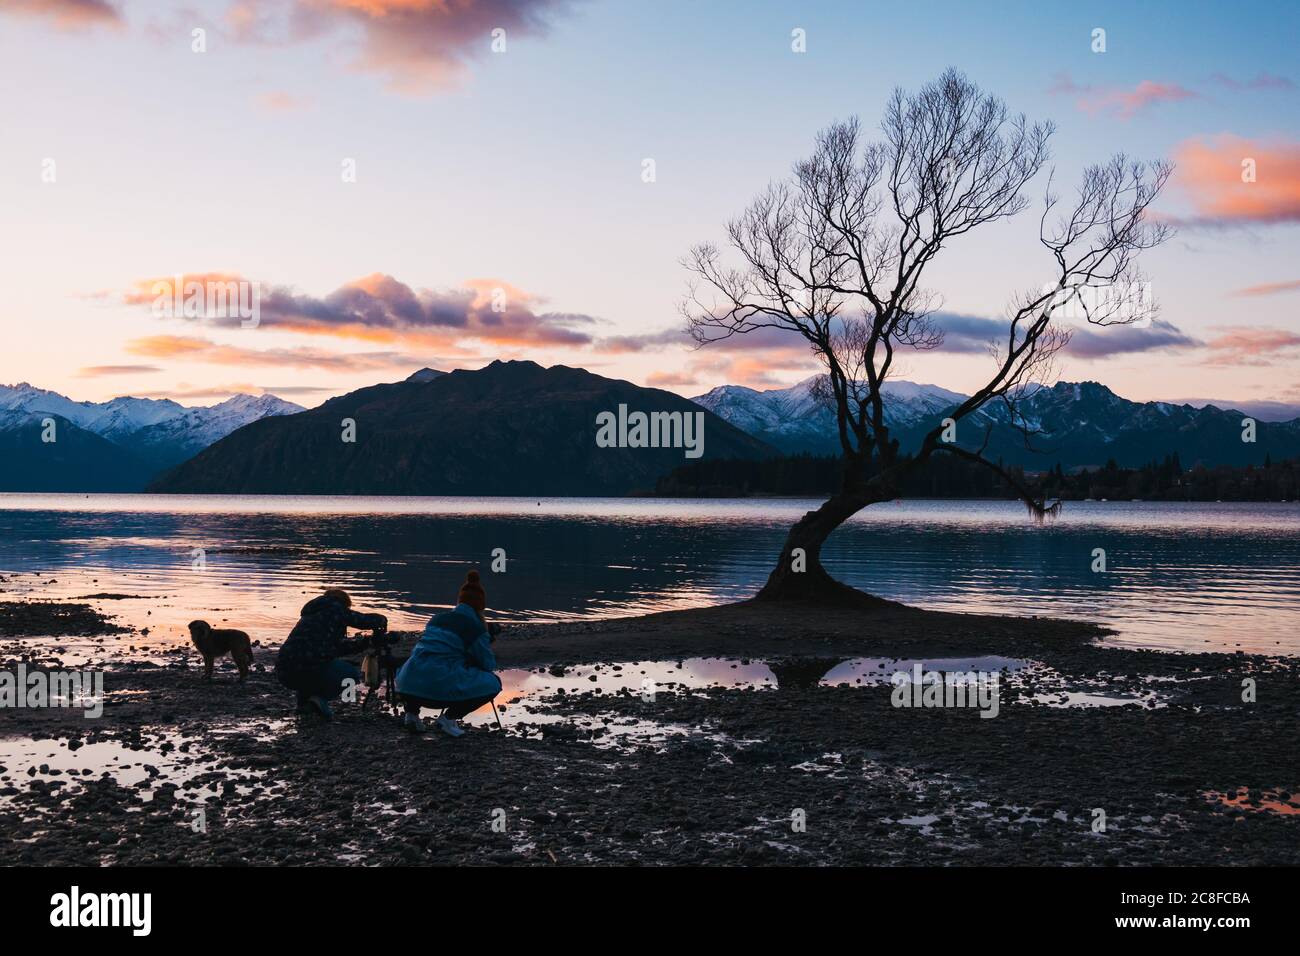 Touristen fotografieren den berühmten "Wanaka Tree" während niedriger Seeniveaus in Wanaka, Neuseeland Stockfoto